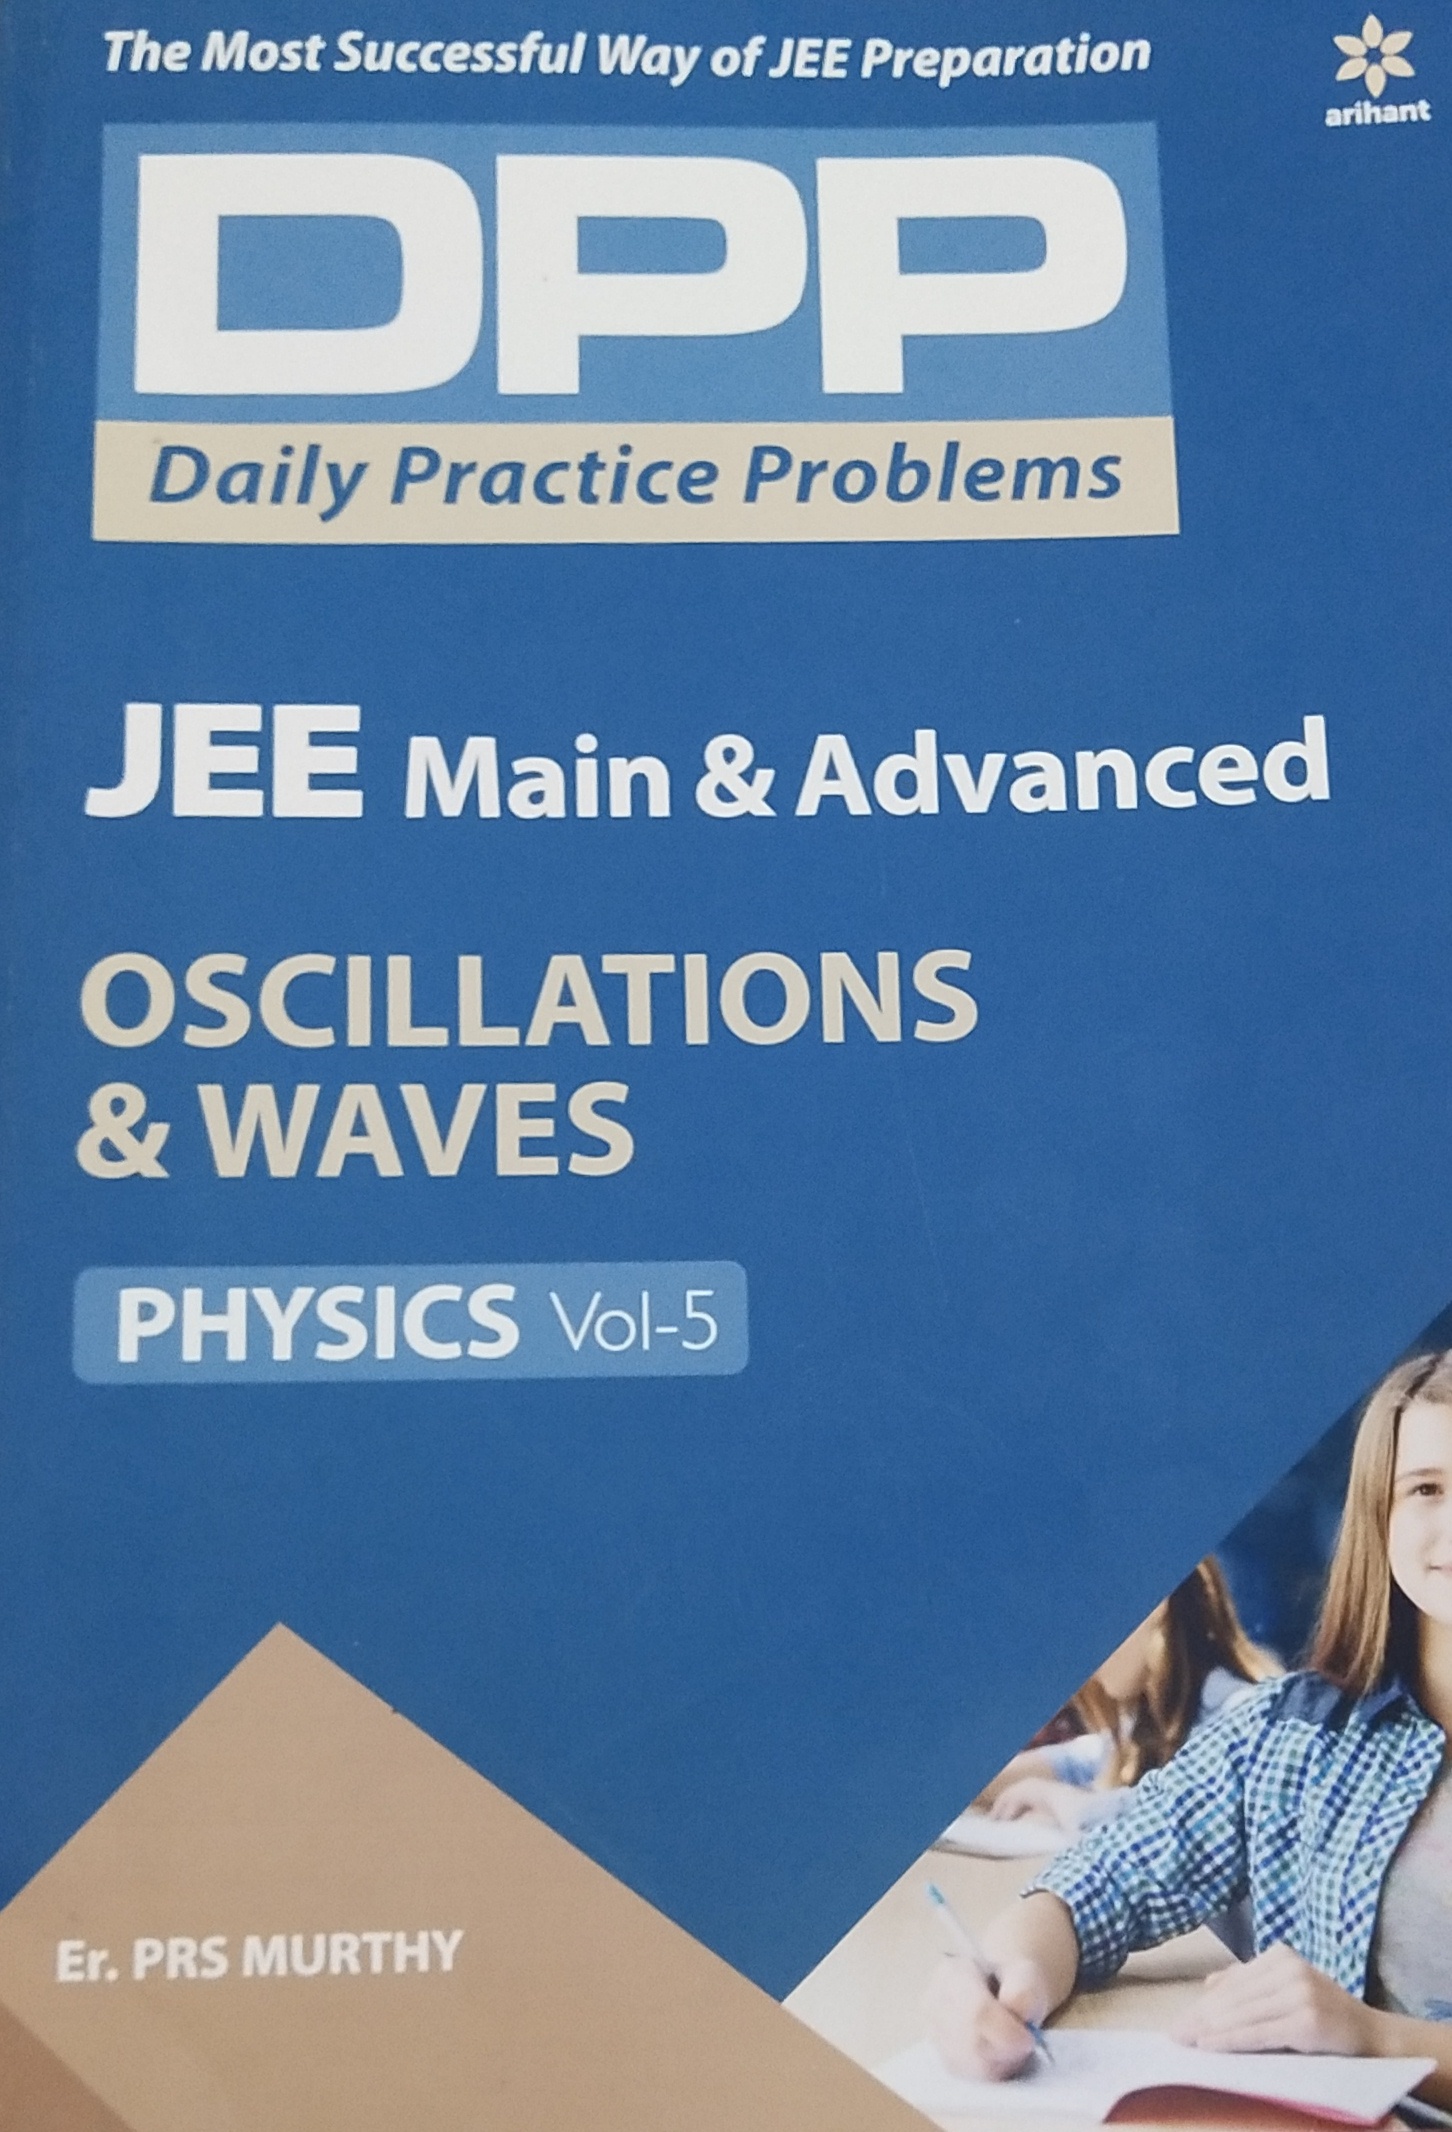 Oscillations and waves DPP Vol-5